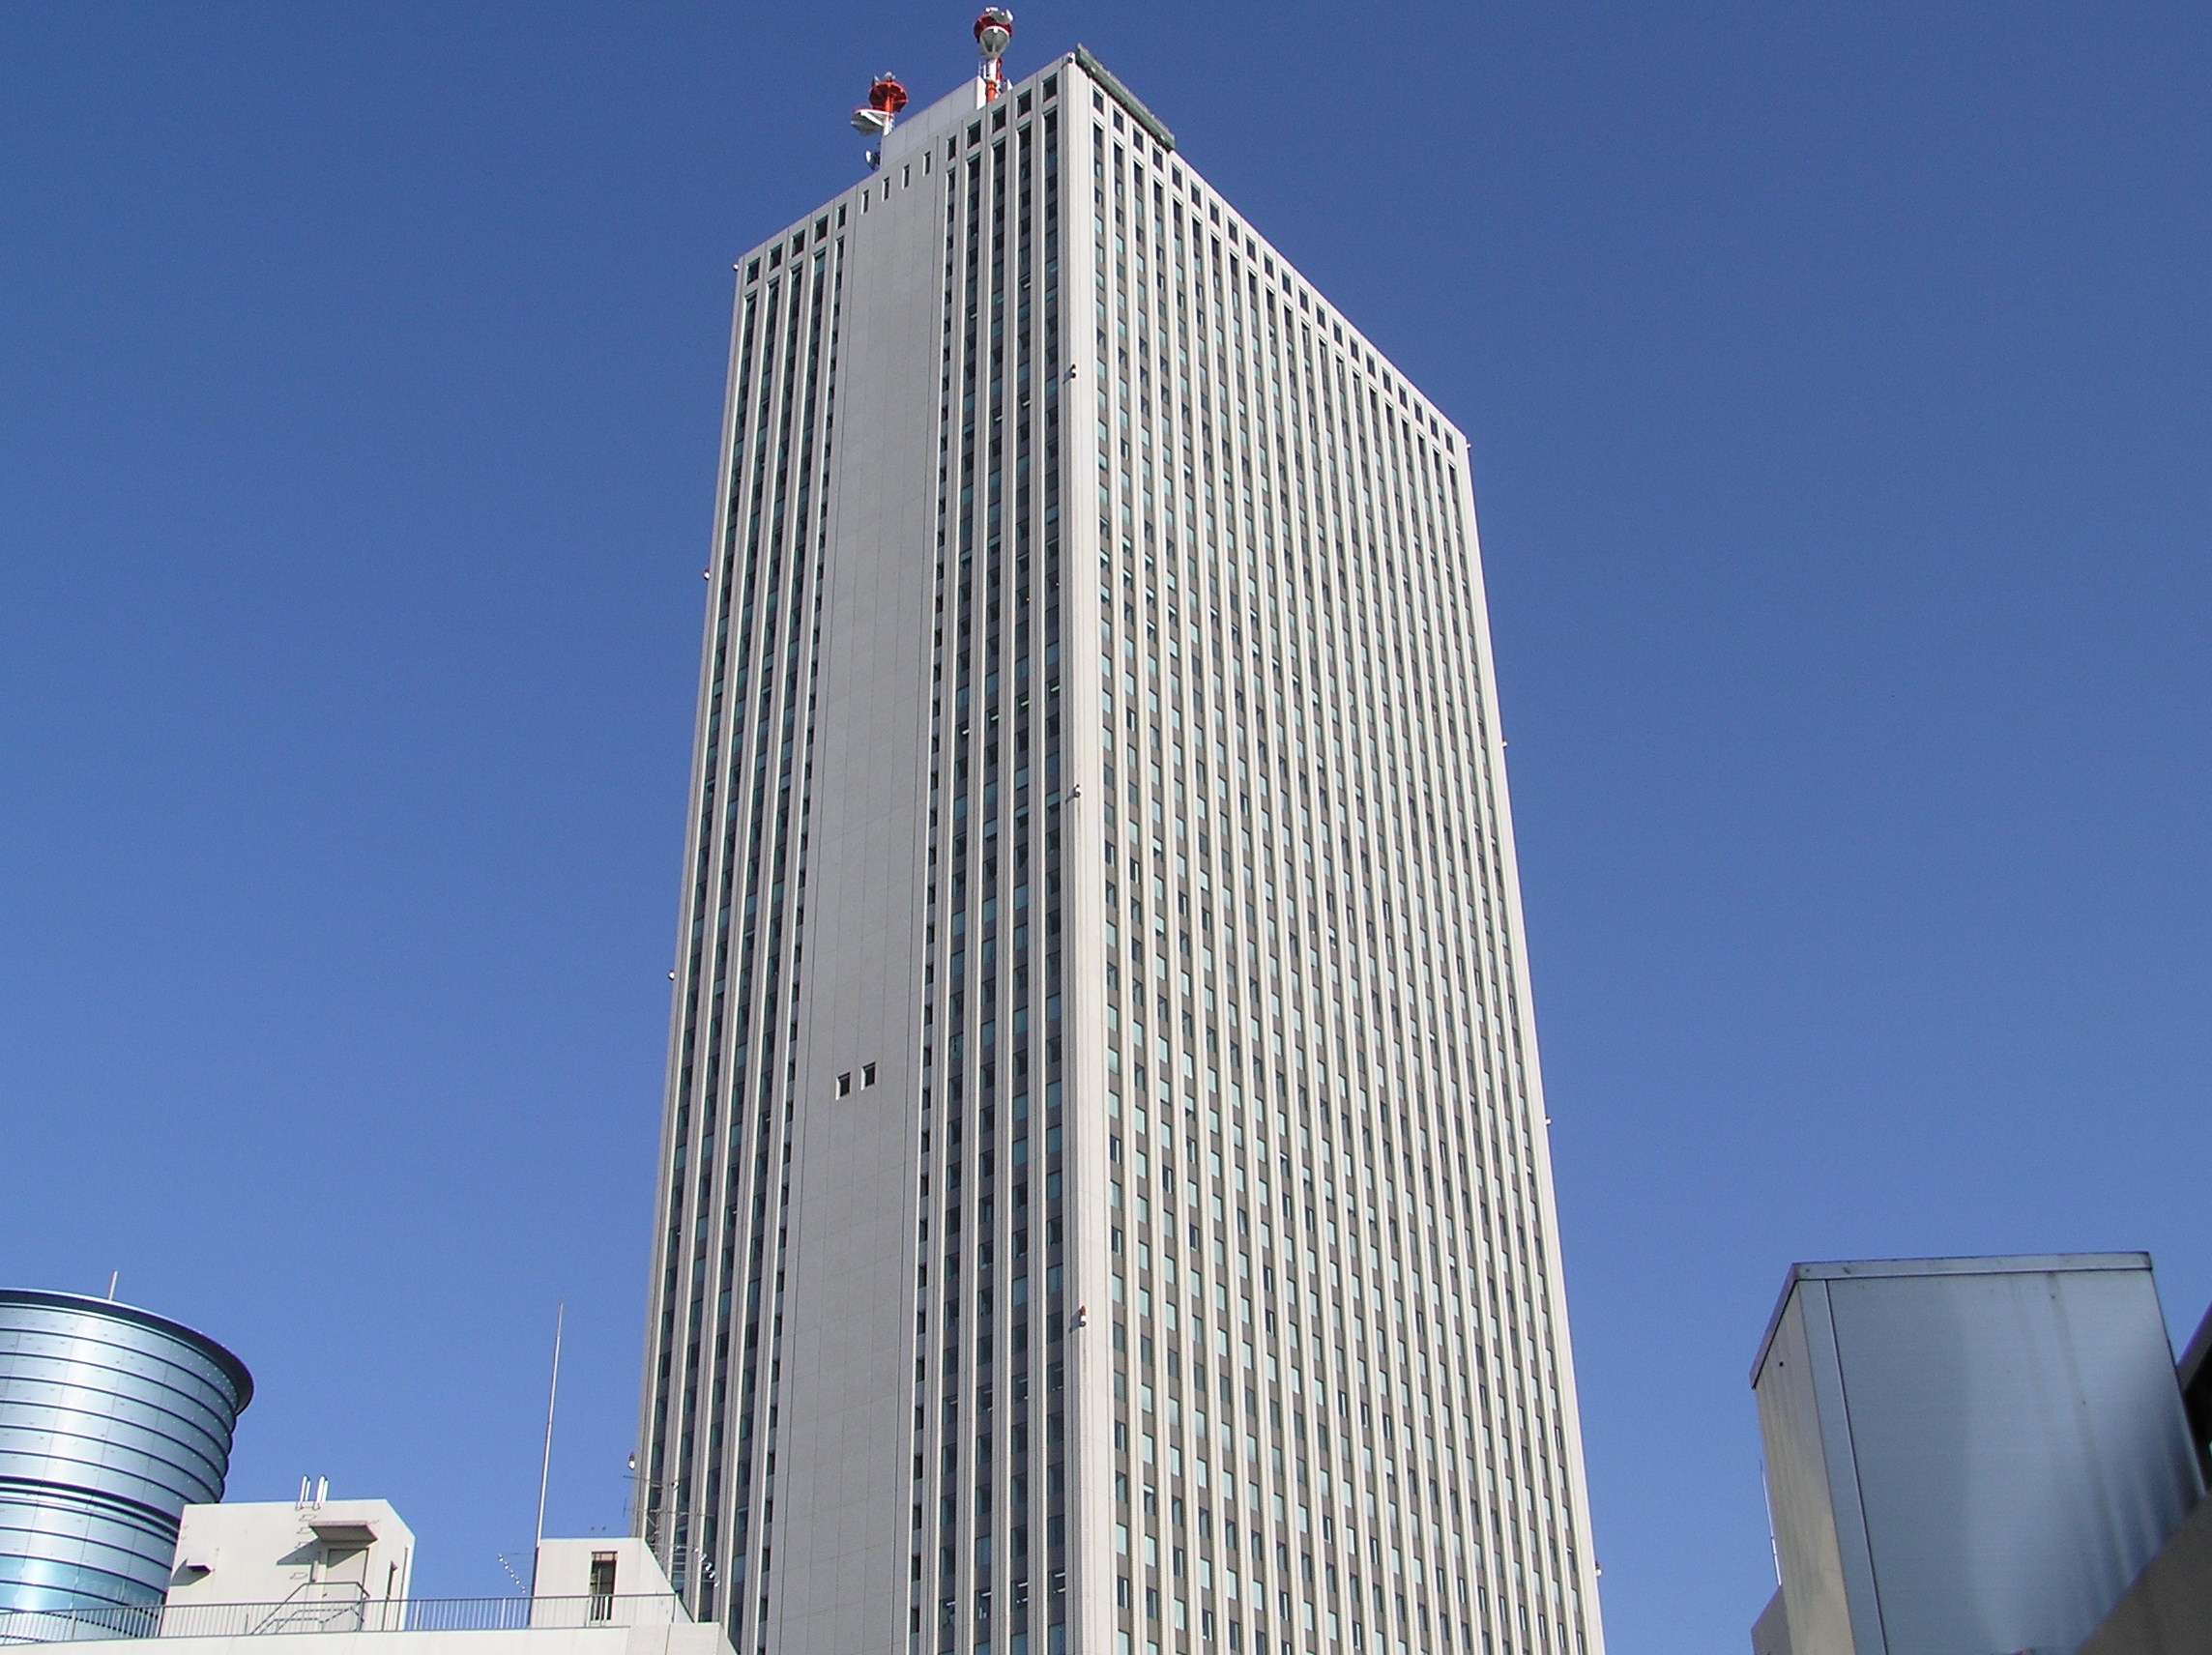 10 หอคอยเเละจุดชมวิวขึ้นชื่อของญี่ปุ่น -ตึกซันชายน์